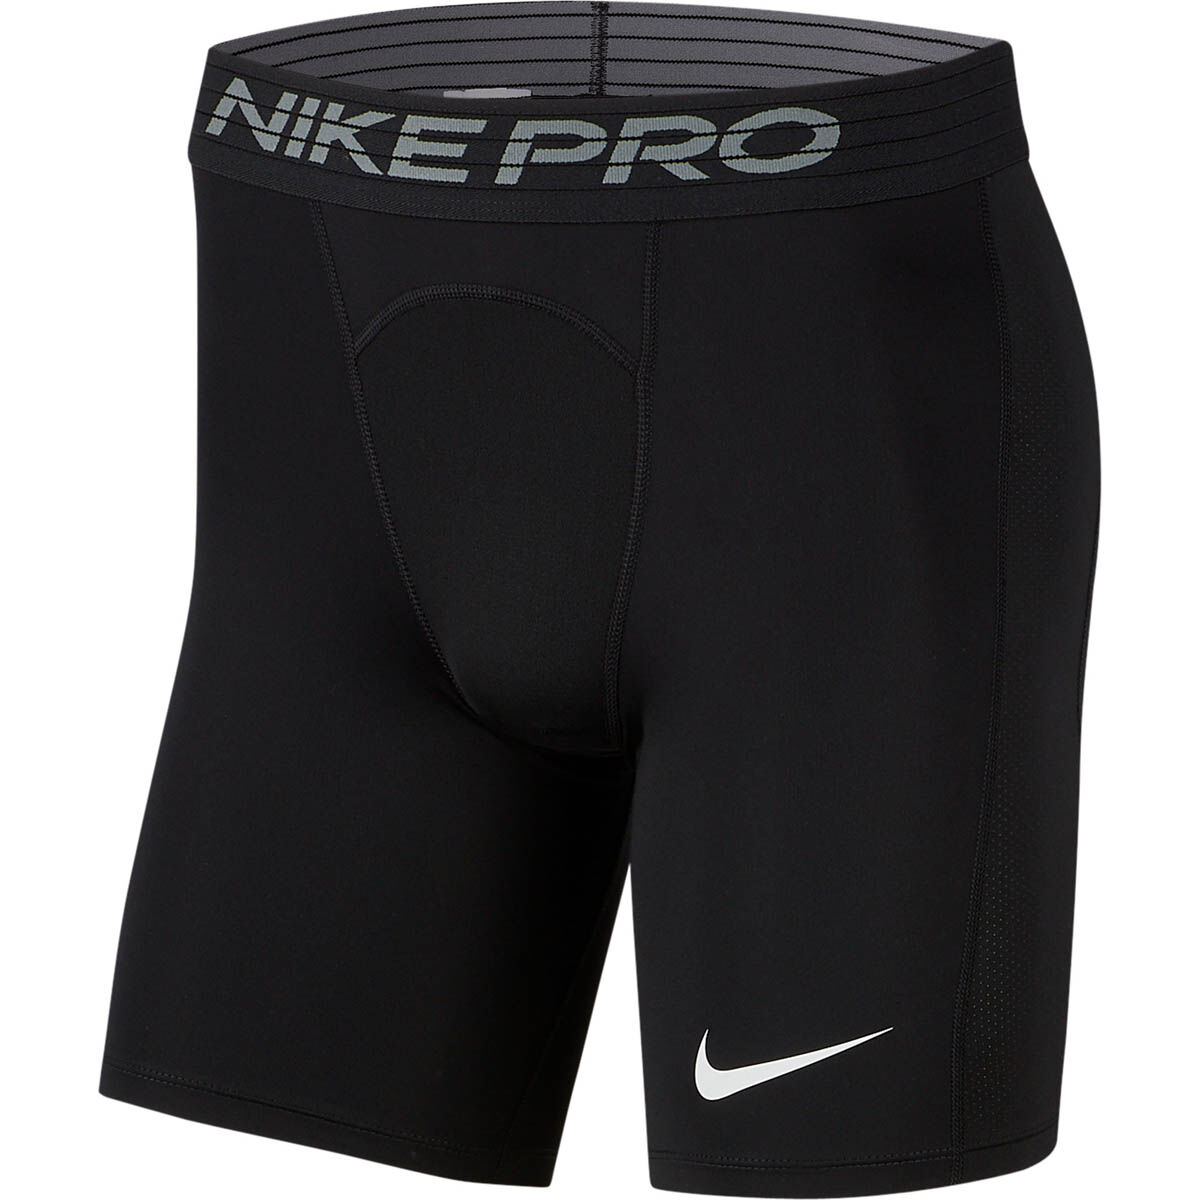 men's shorts nike pro